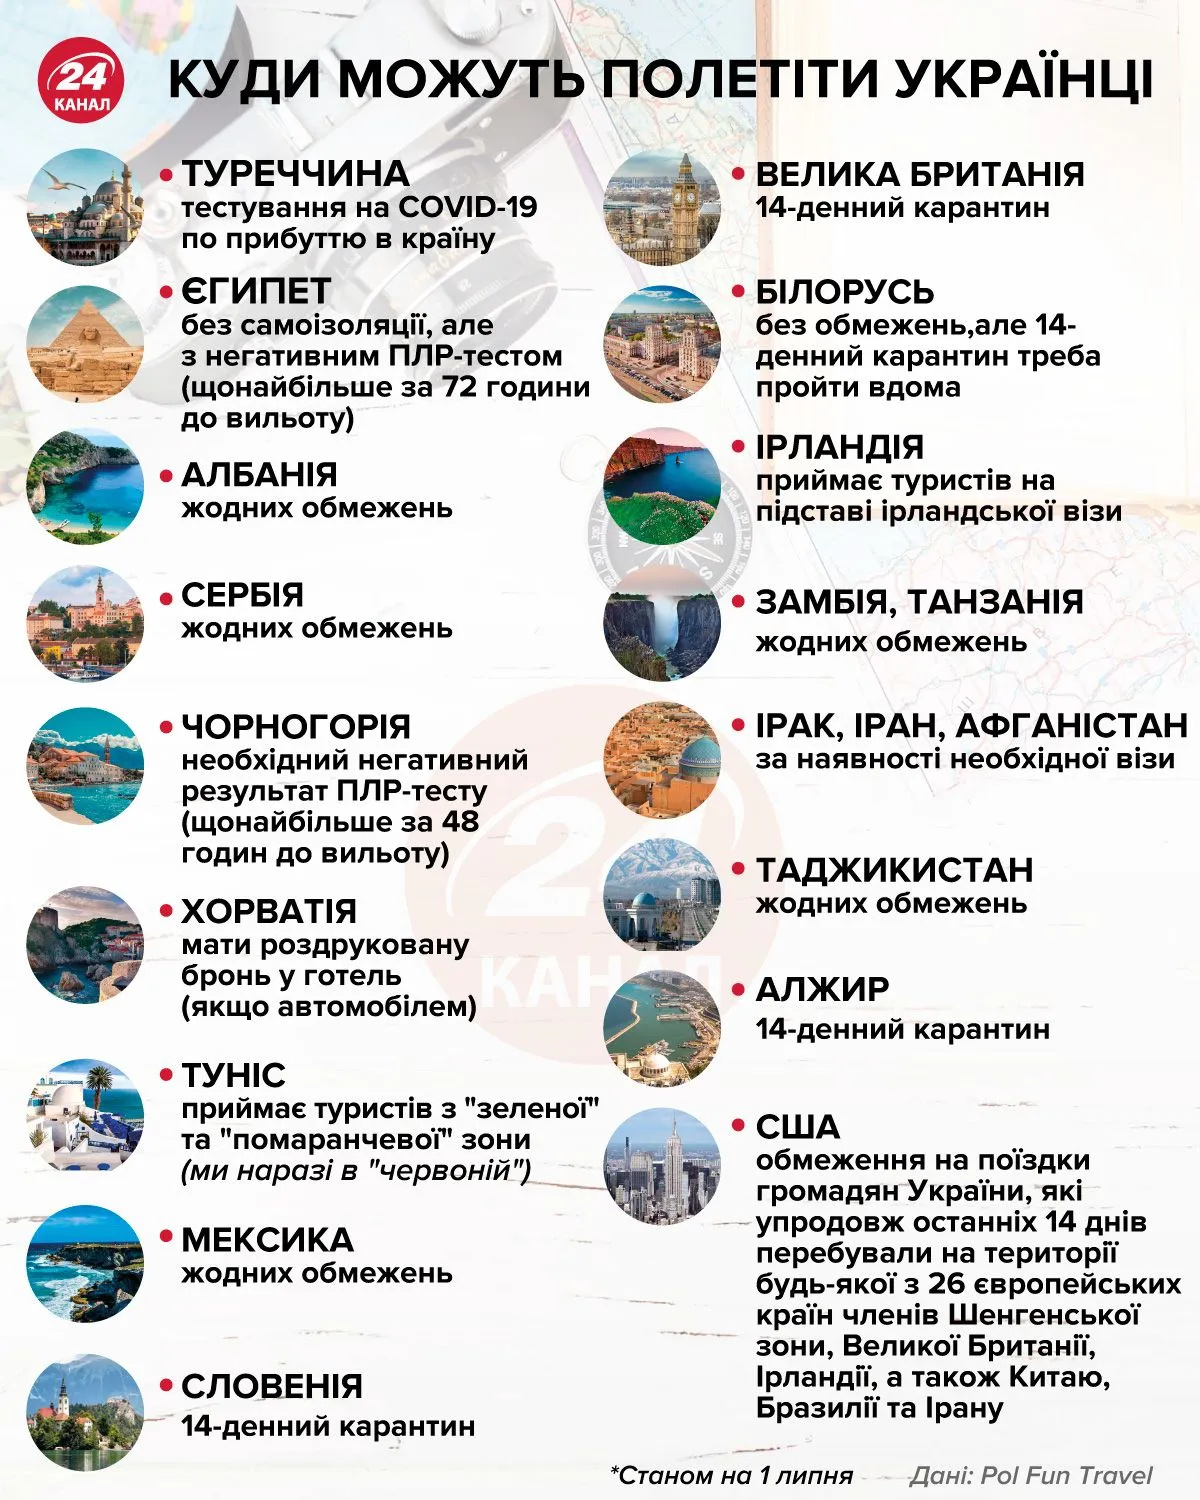 куда могут полететь украинцы инфографика 24 канал